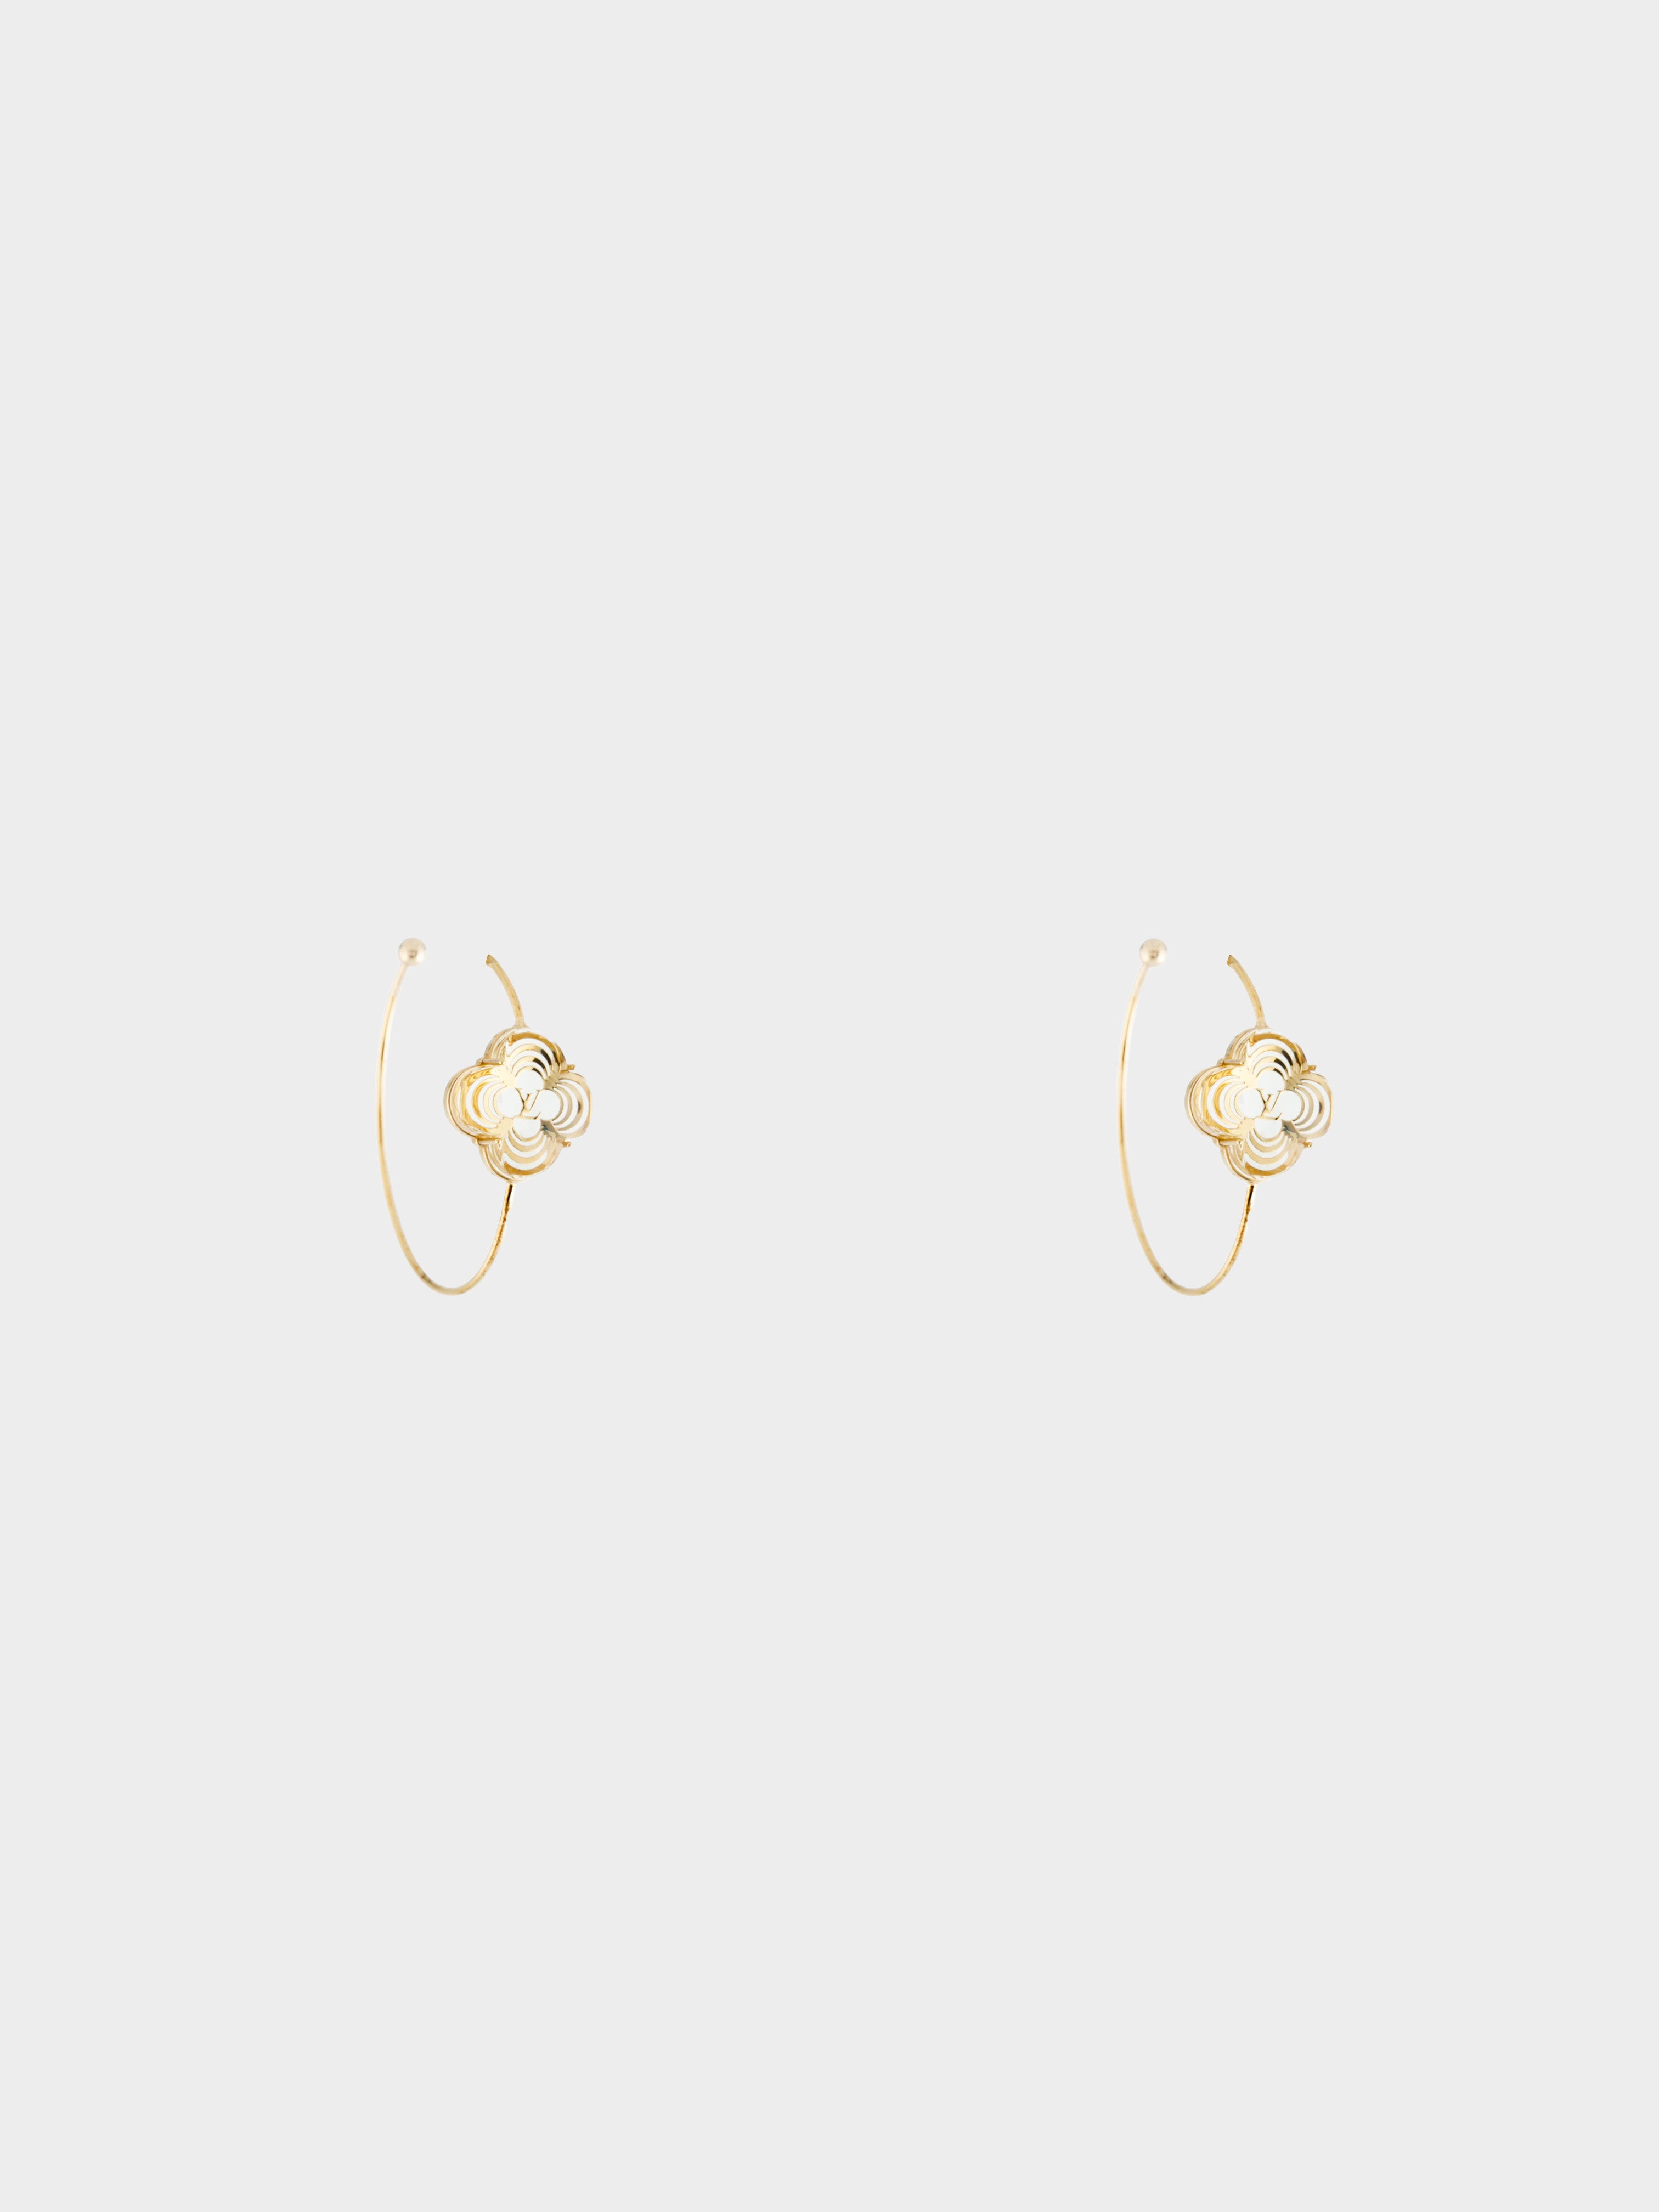 Louis Vuitton 2010s Gold LV & ME Pendant Necklace Letter R · INTO